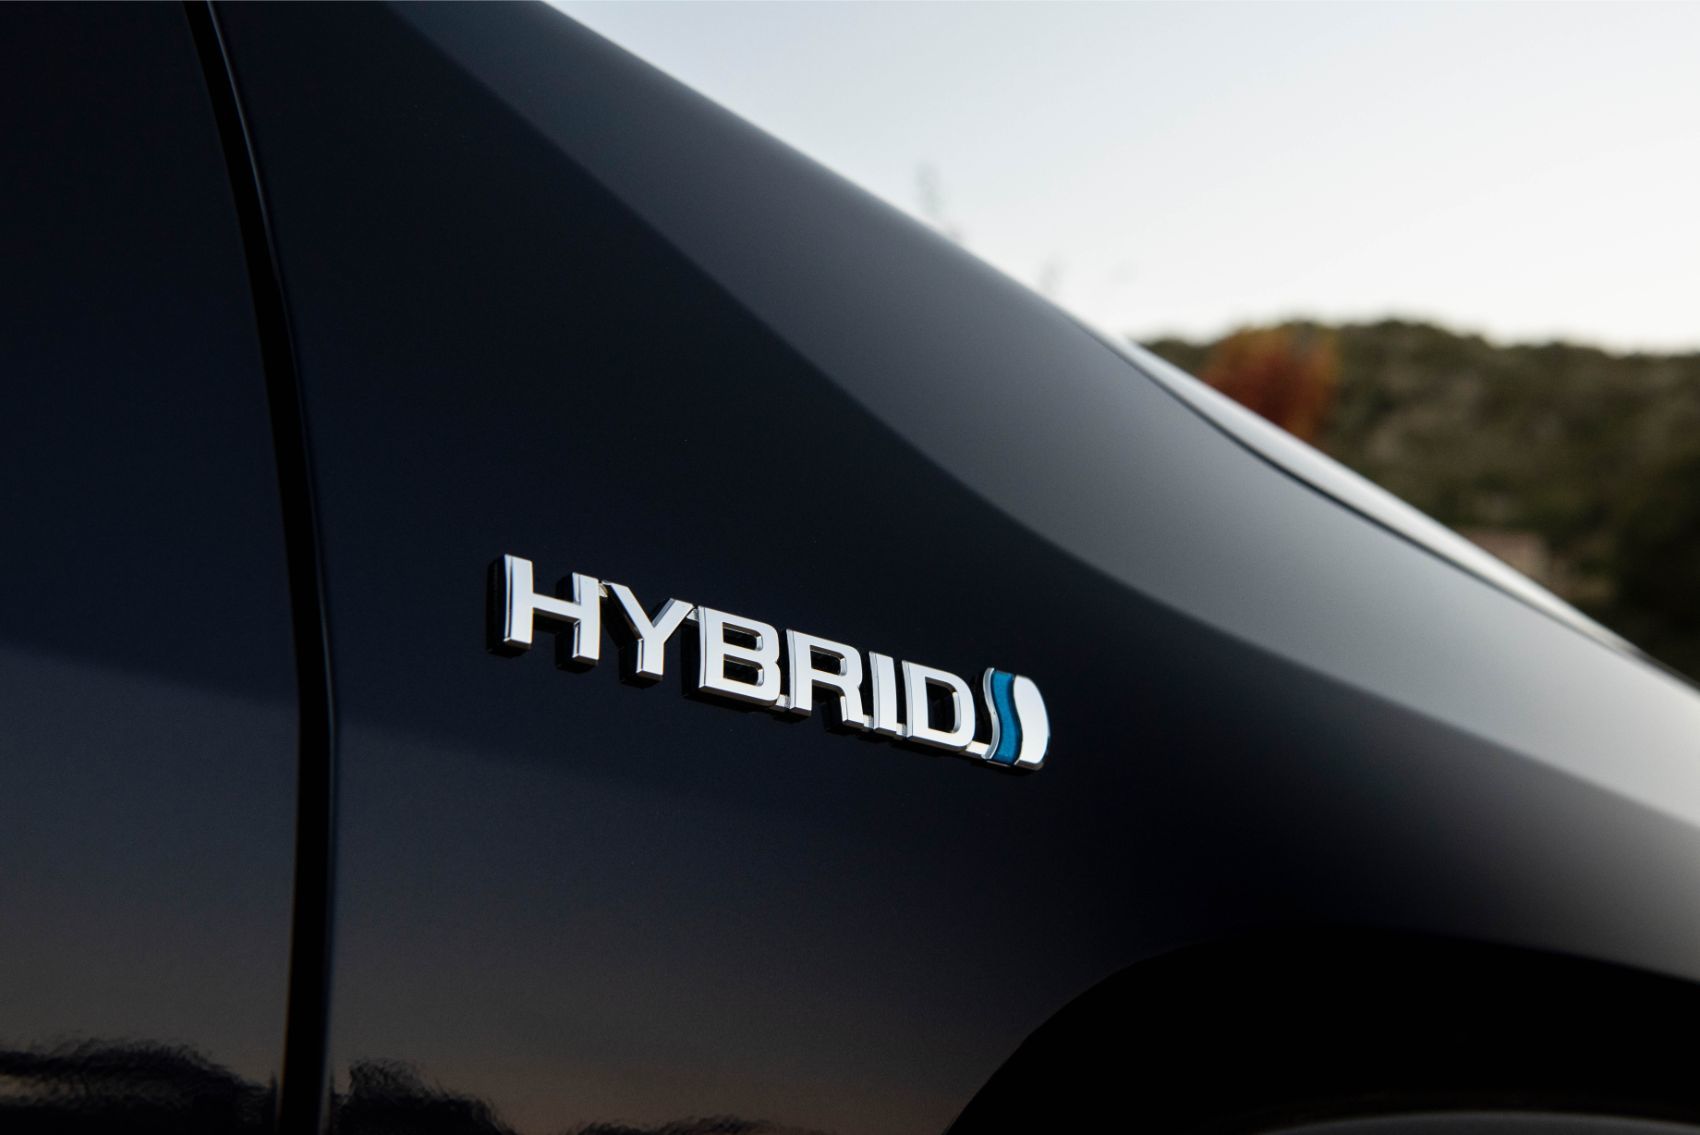 2020 Toyota RAV4 Hybrid